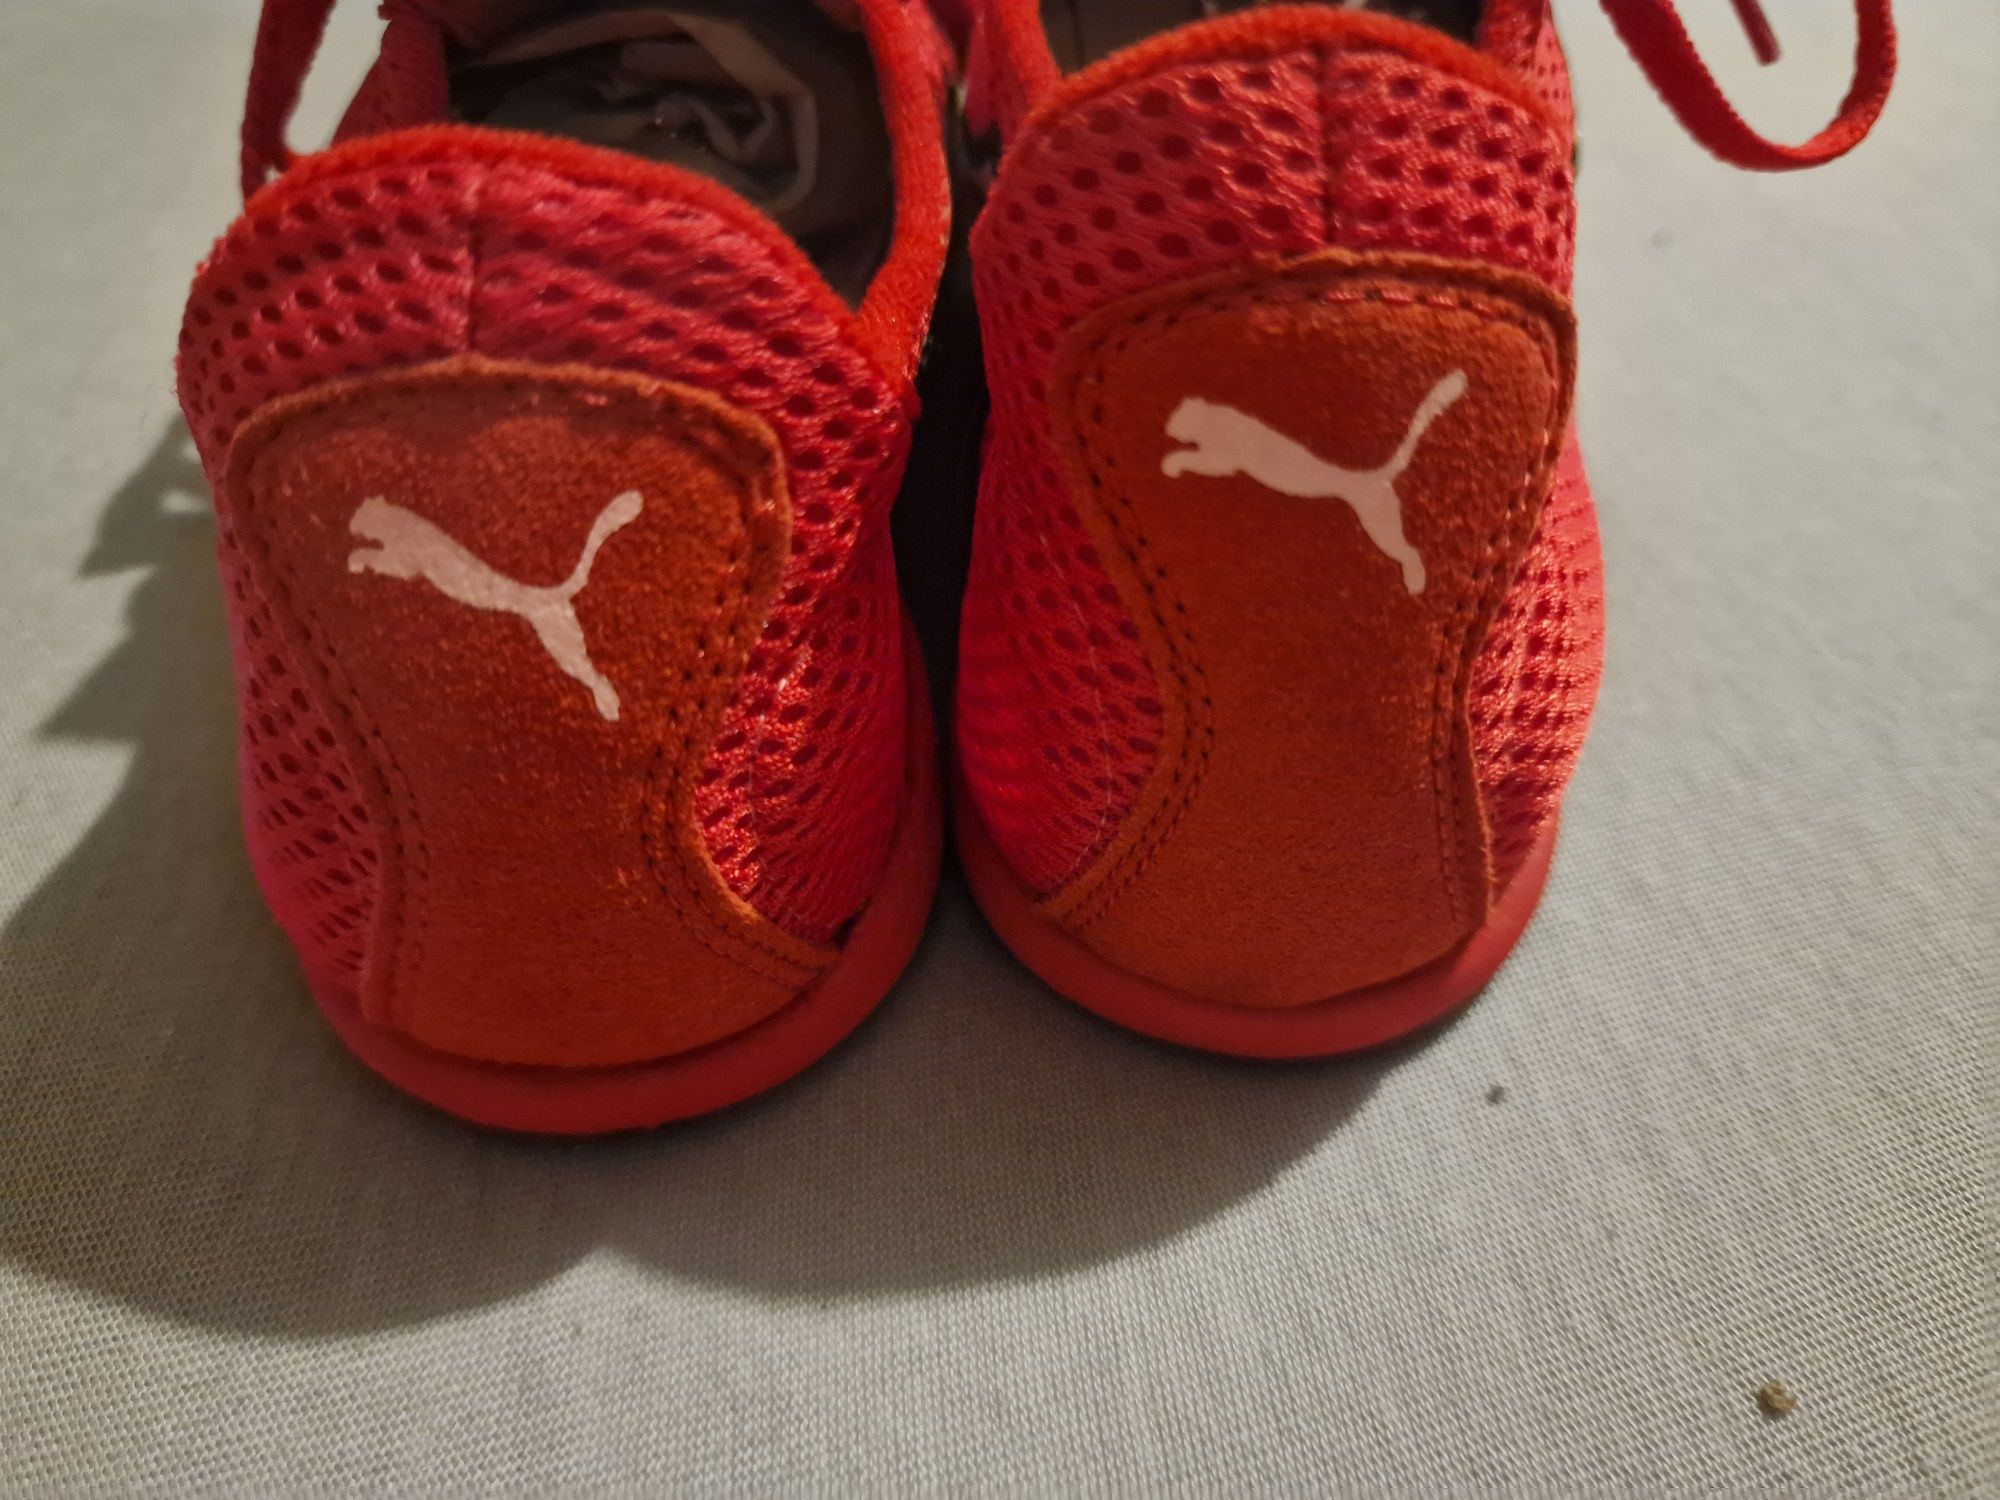 Nowe buty Puma kolce czerwone Rozm.42